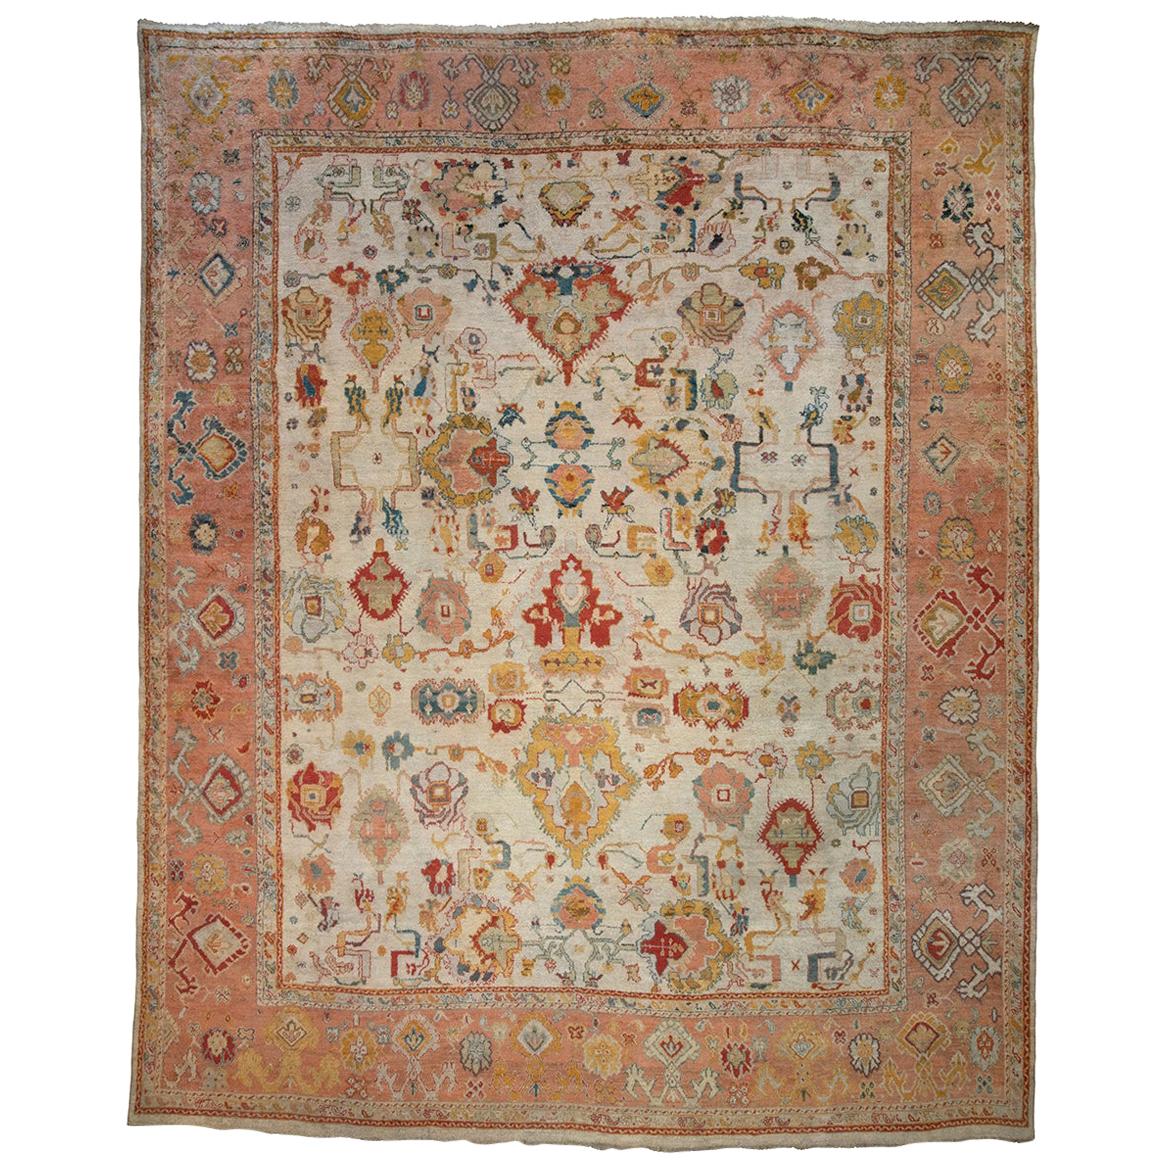 Fantastic Antique Oushak Carpet For Sale